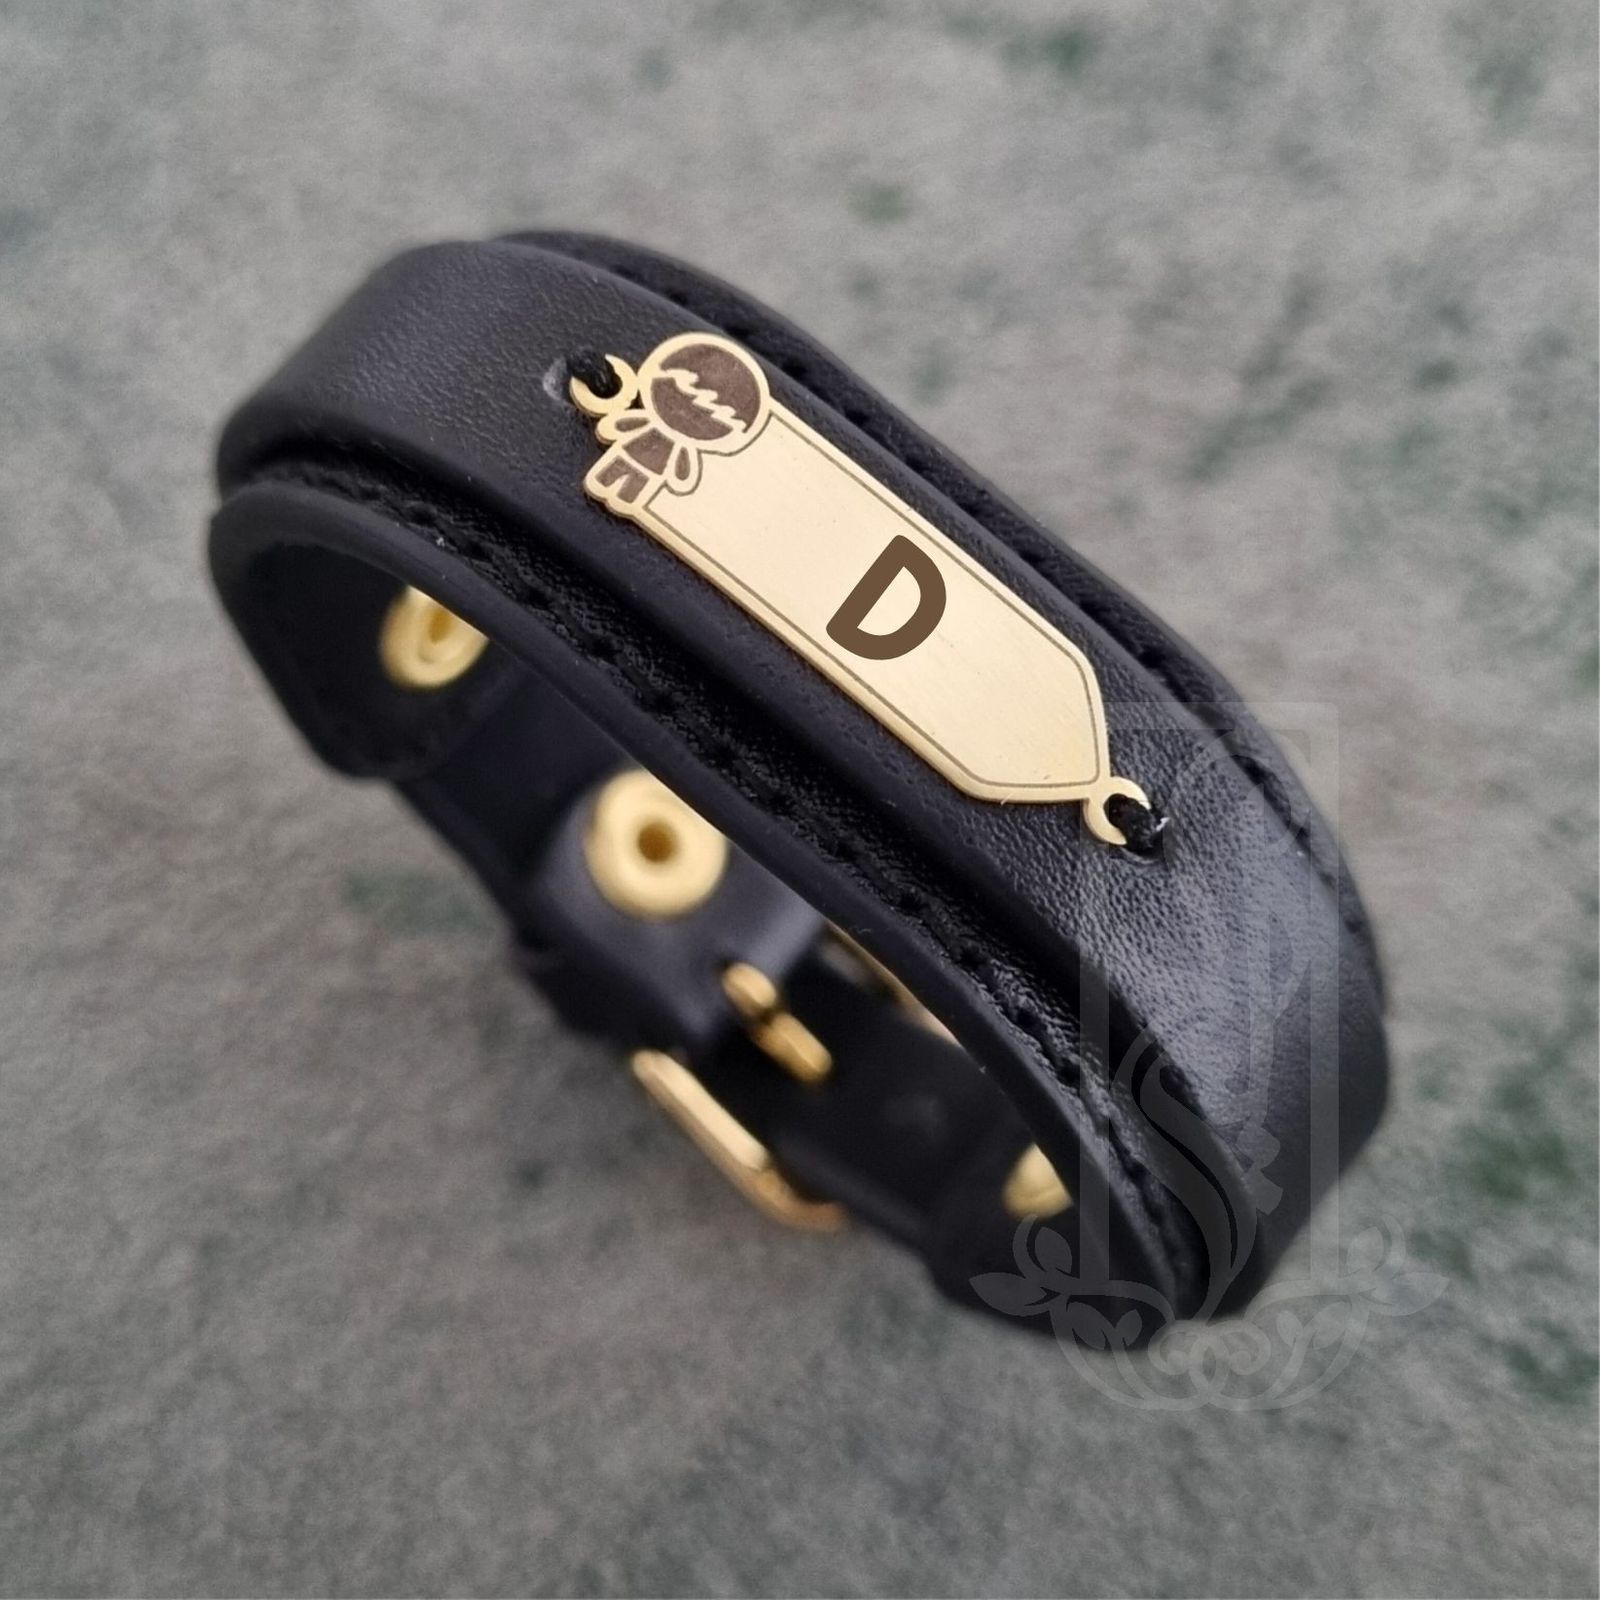 دستبند طلا 18 عیار بچگانه مدل حرف D کد KDK -  - 3